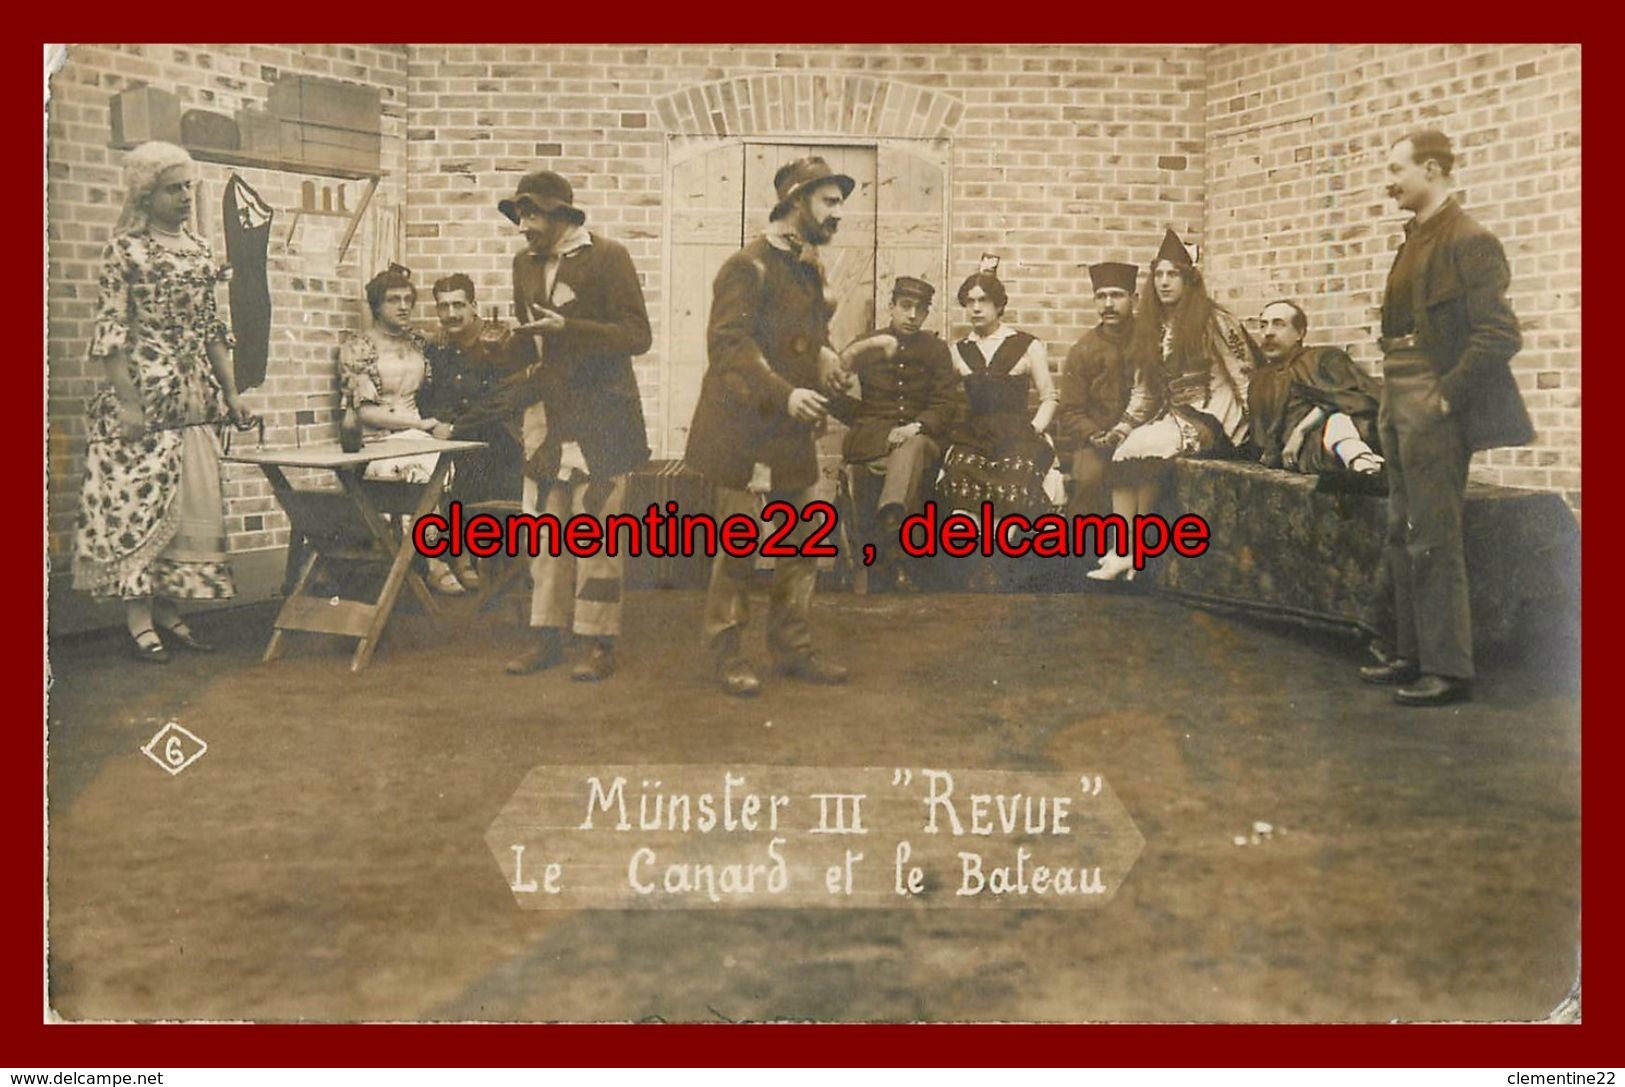 Munster , Carte Photo  , Camp Prisonniers , Théatre ,  Allemagne ,  Militaire , Guerre 1914 1918 Cachet - Munster